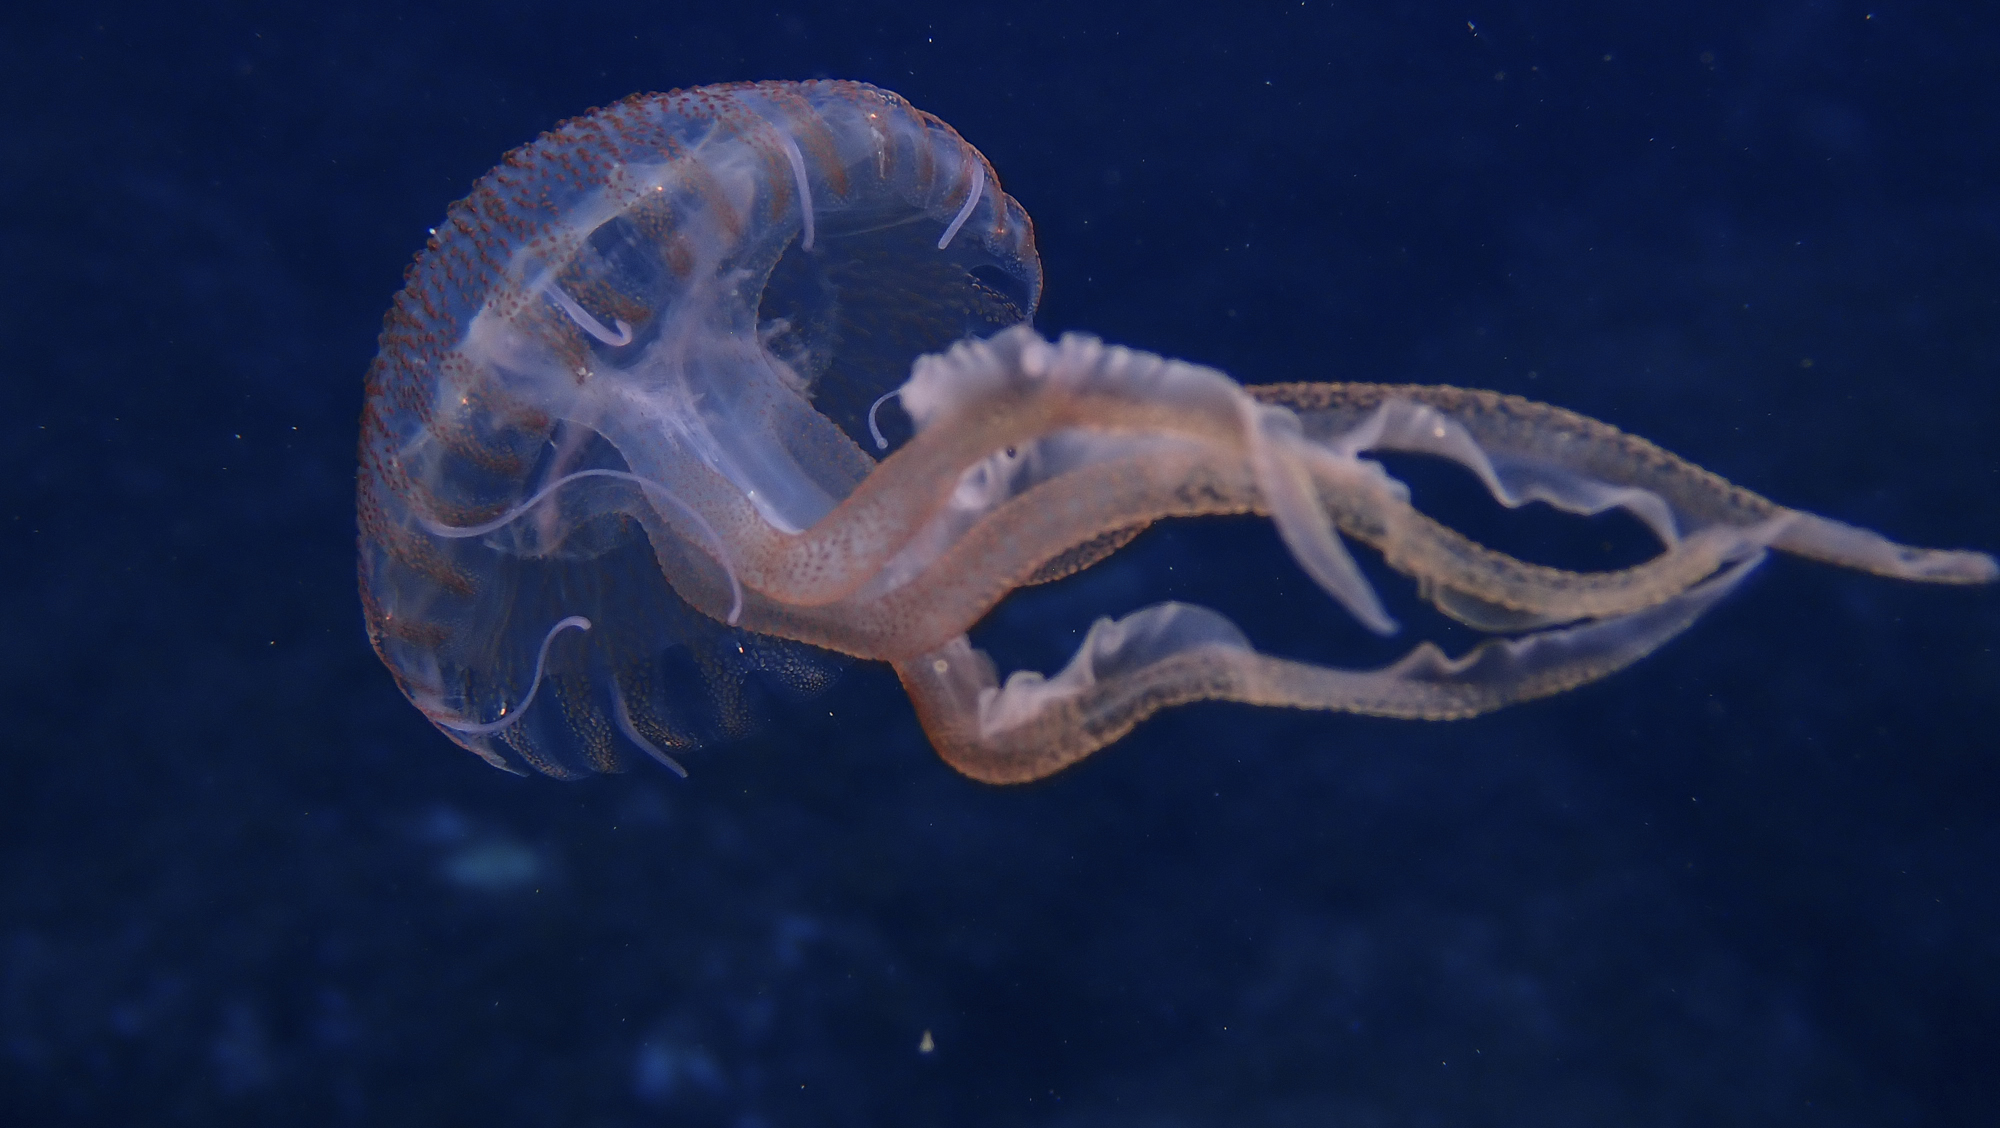 fotoNAT-UB 2021 - SELECCIONADA DE ZOOLOGIA: 'Groovy jellyfish' (Martín Gargallo)